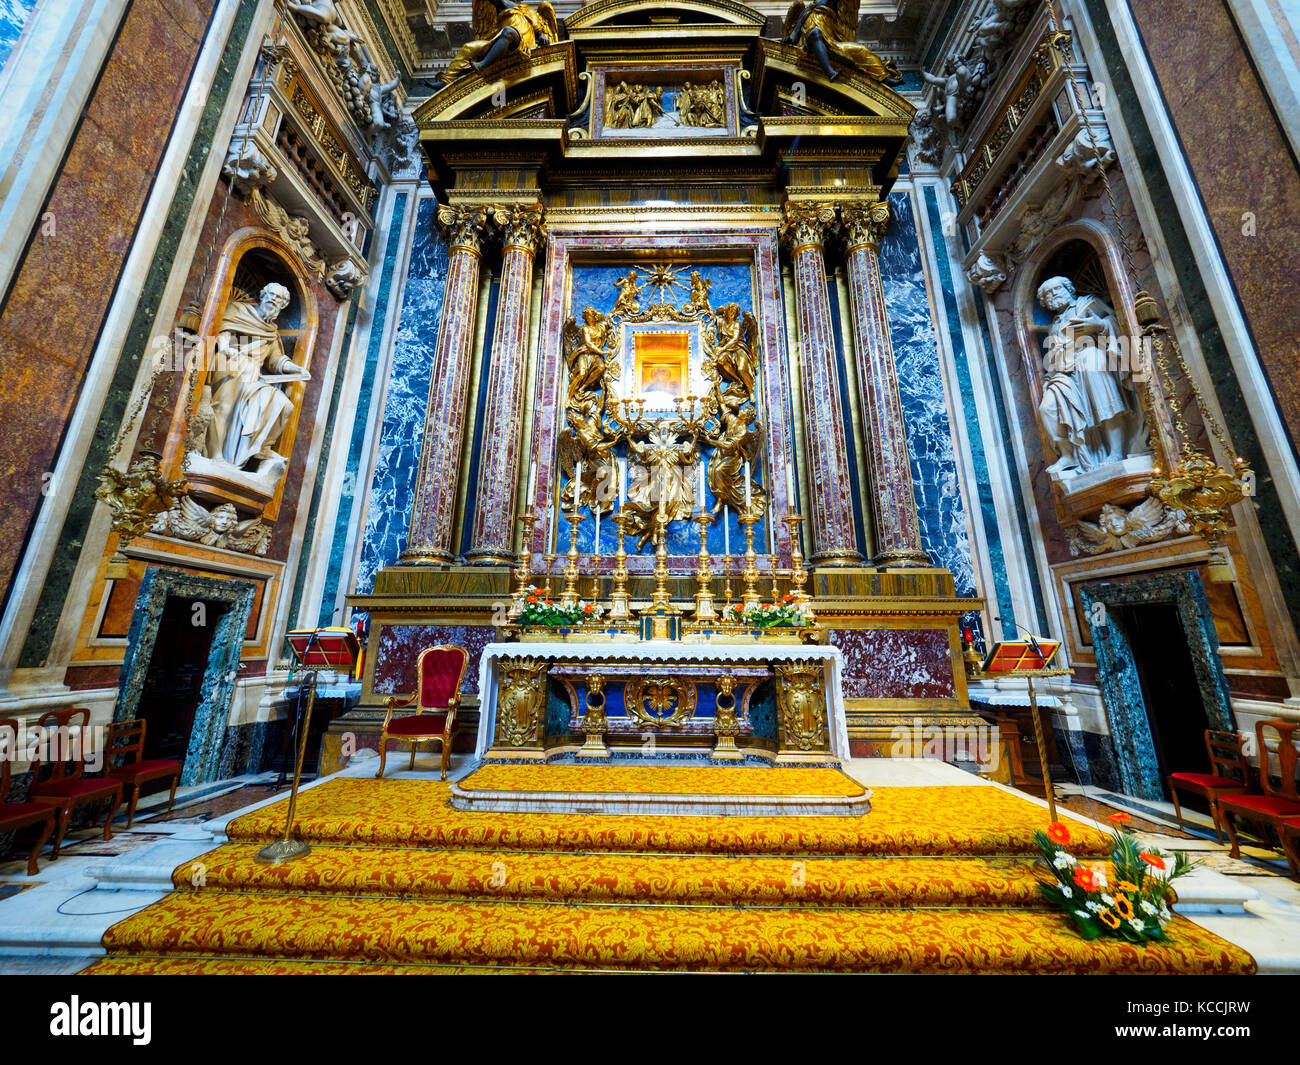 La Cappella Borghese nella Basilica di Santa Maria maggiore - Roma, Italia  Foto stock - Alamy